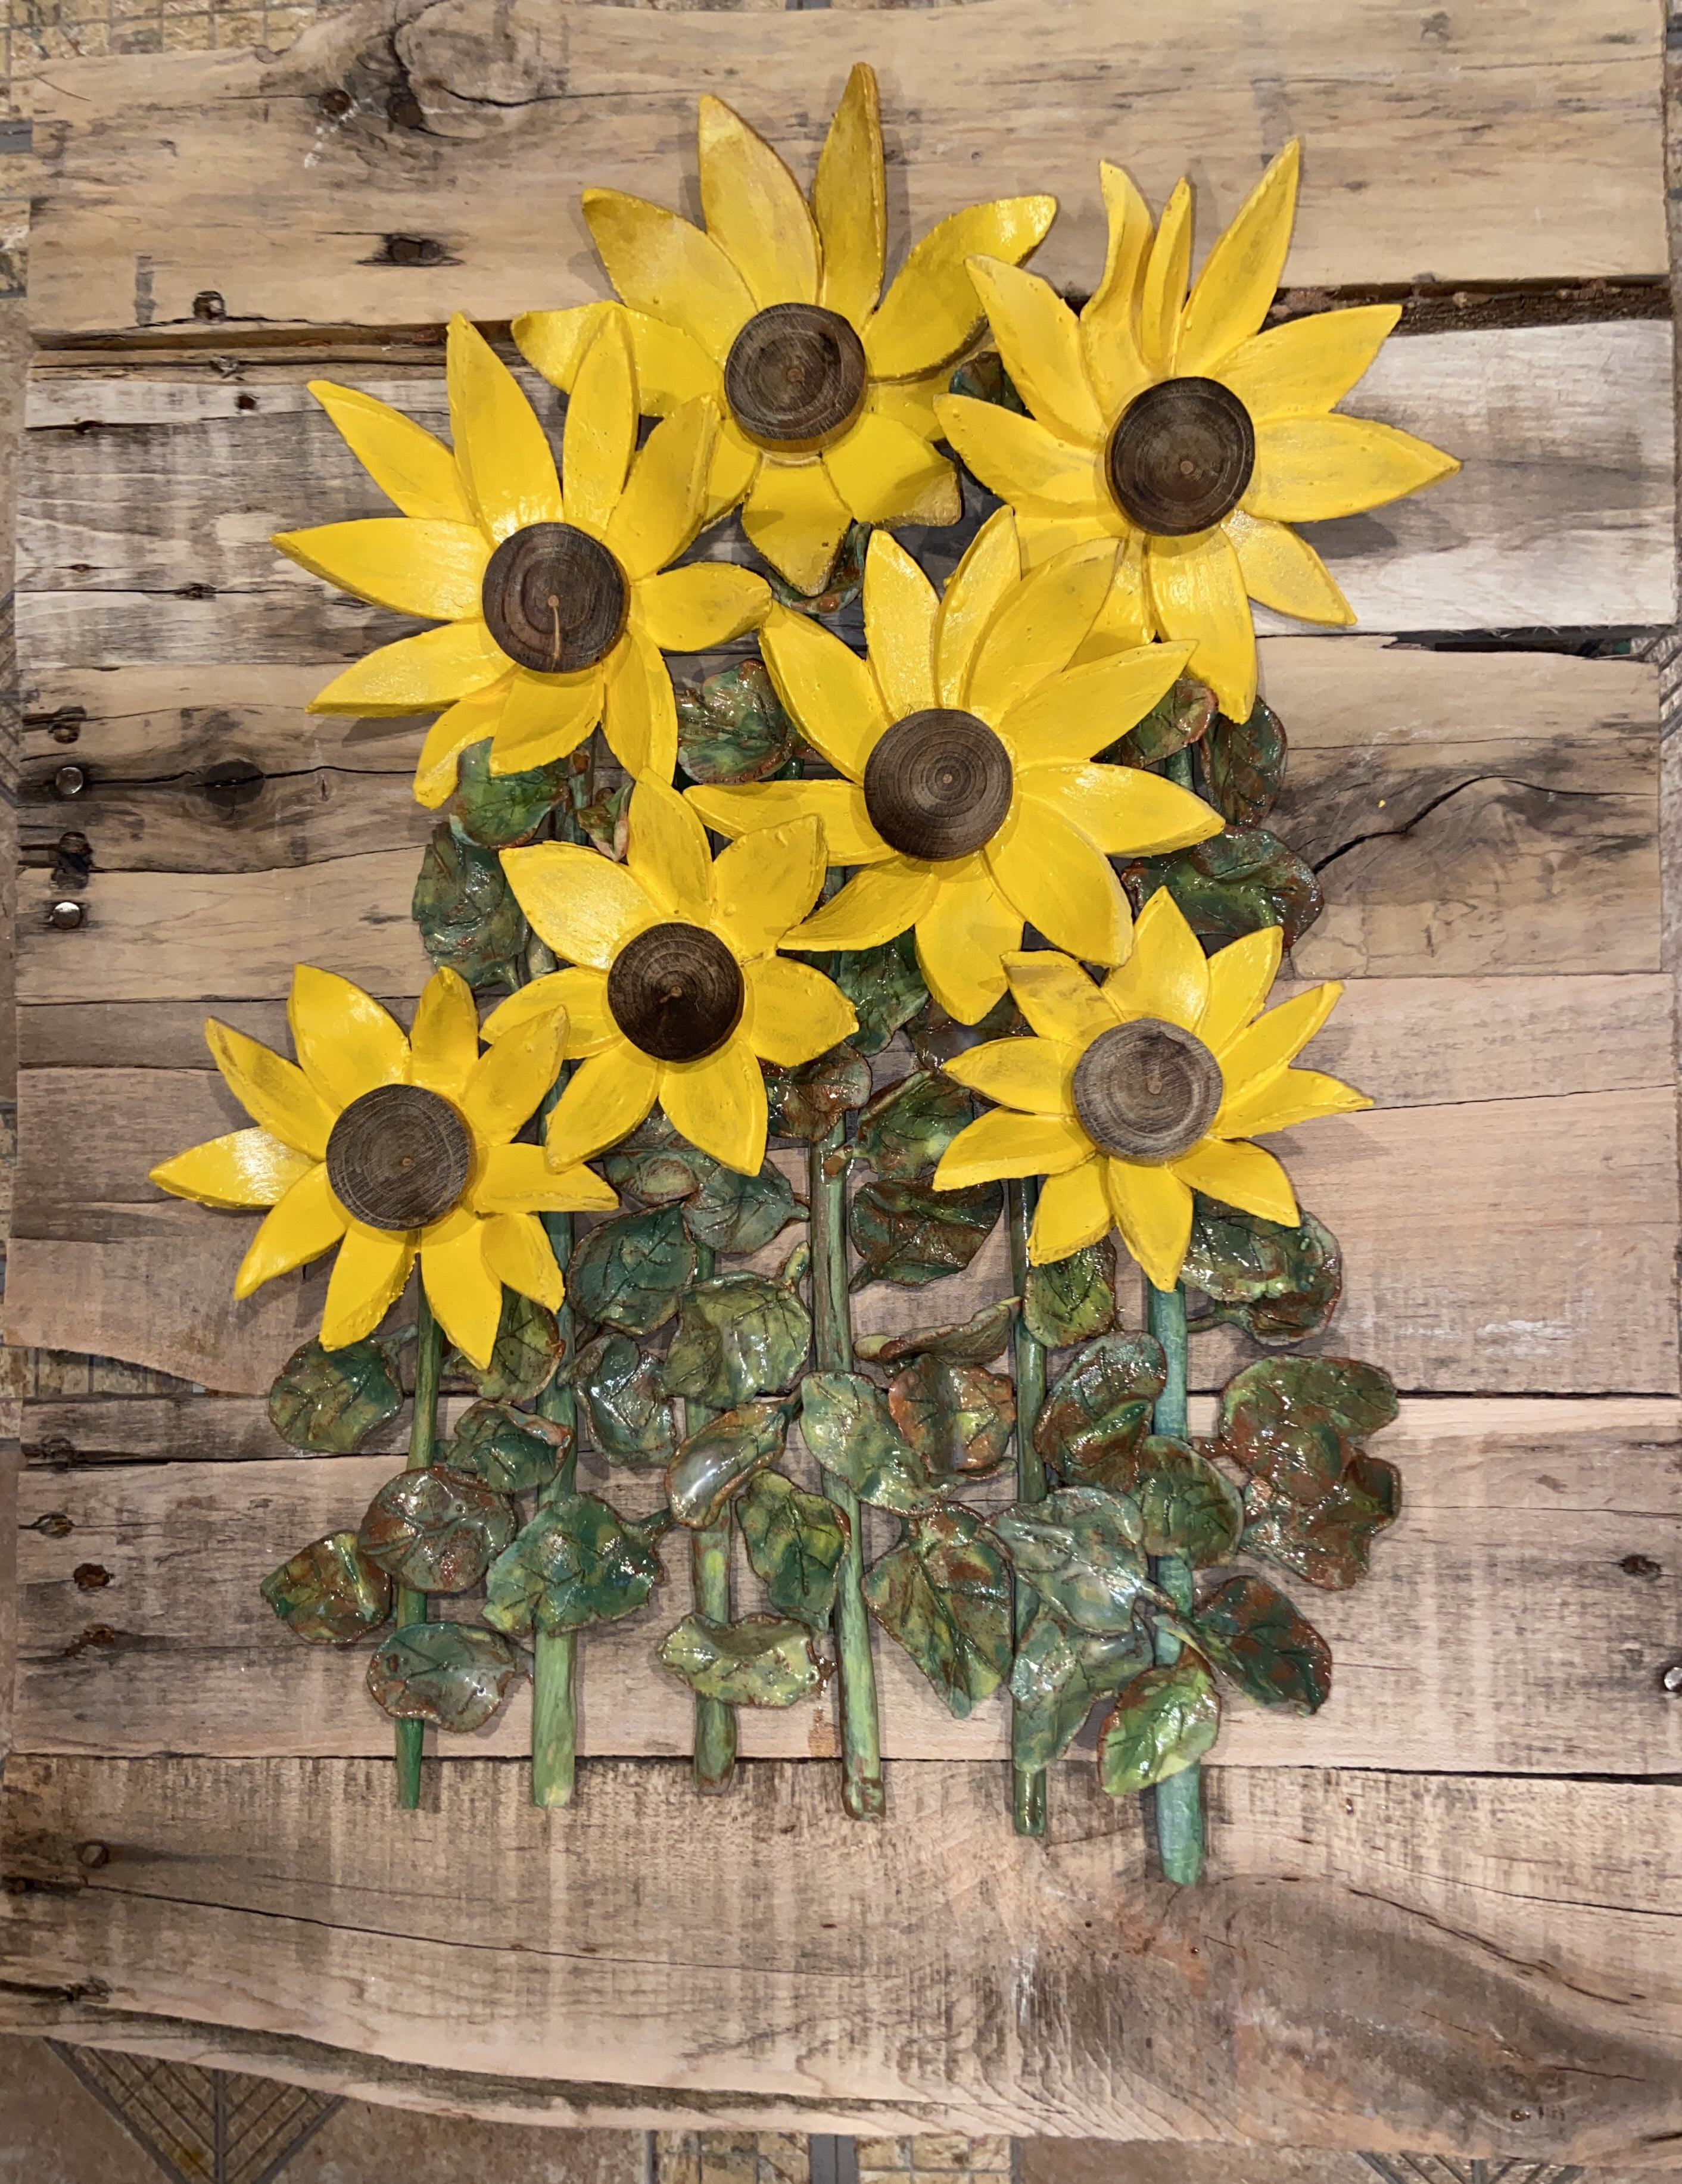 Kasse Andrews-Weller: Sunflowers